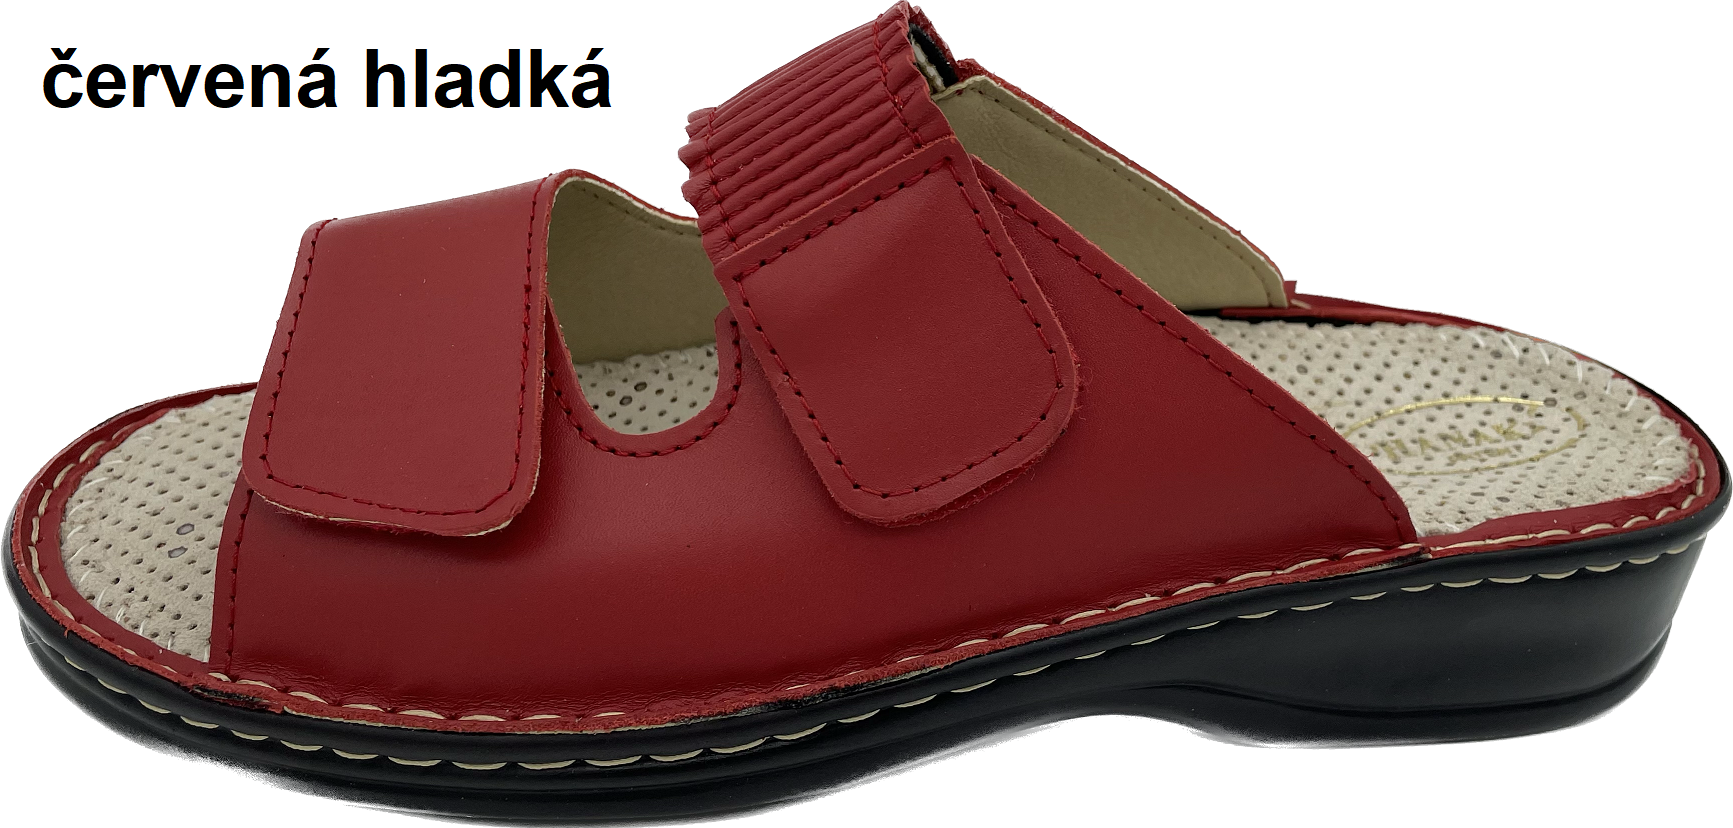 Boty Hanák vzor 304 - černá podešev Barva usně: červená hladká, Velikosti obuvi: 36